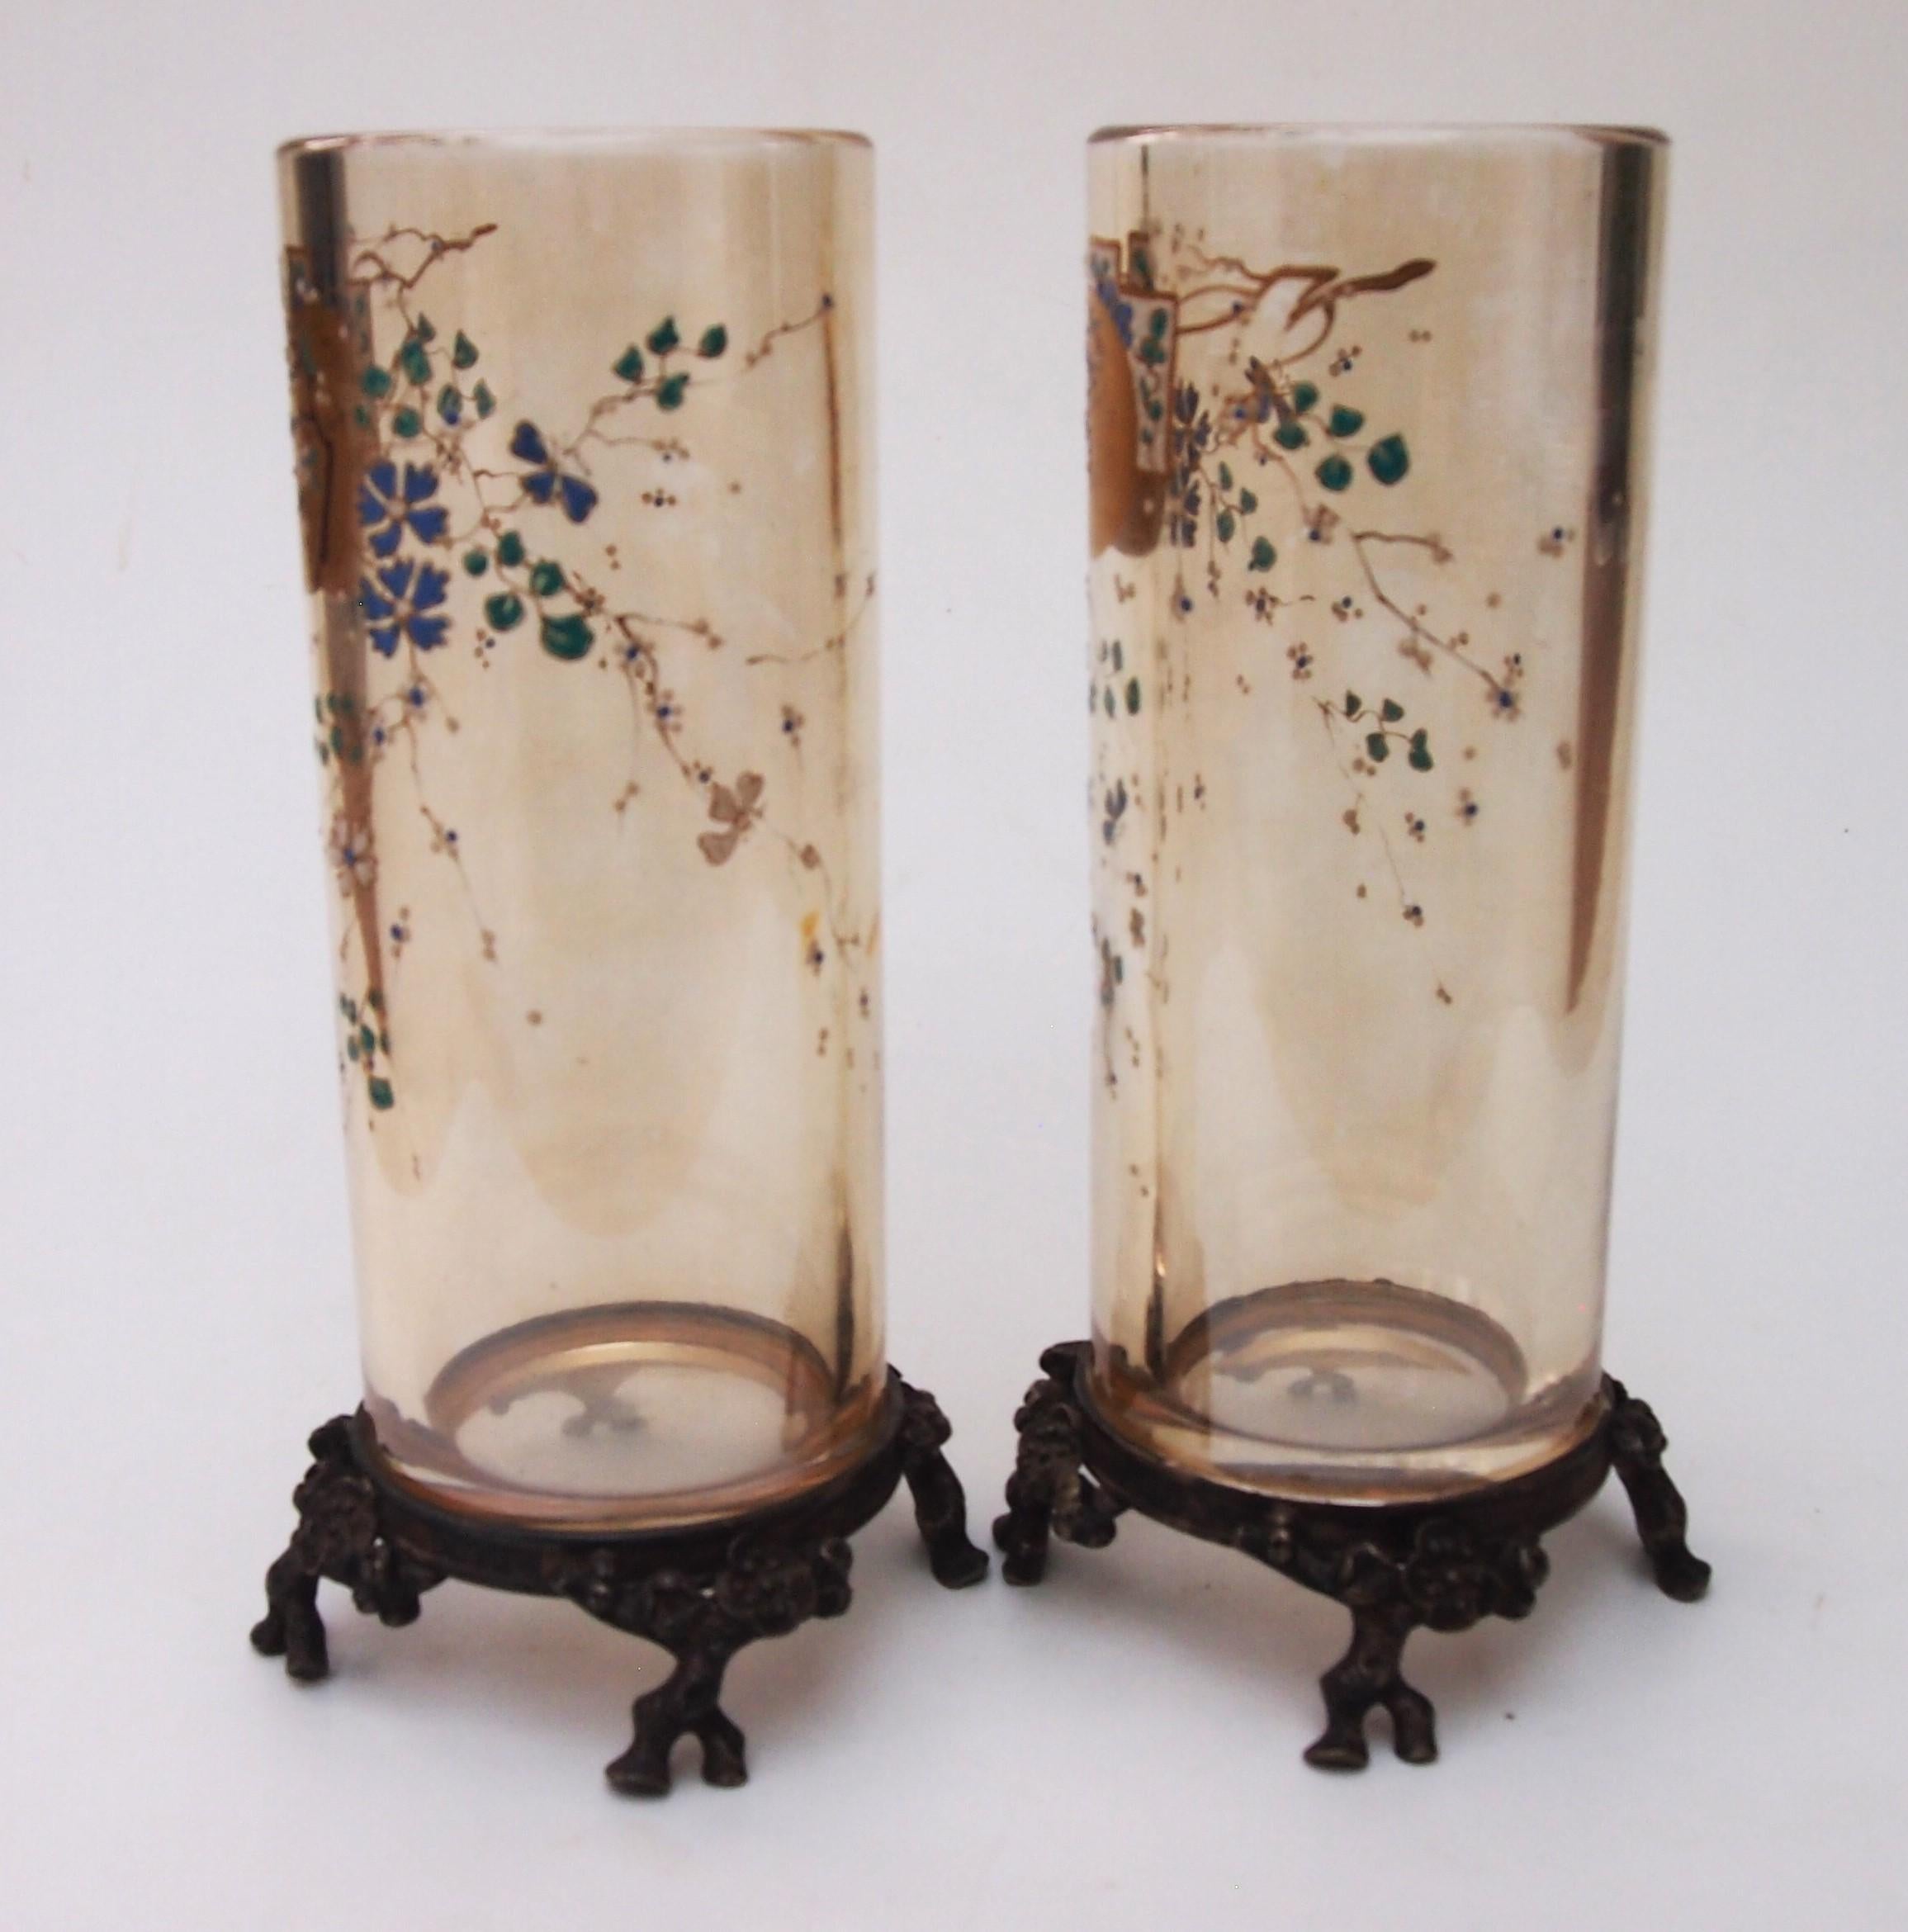 Une paire très importante et rare de vases de Chinoiserie de Baccarat sur des supports d'origine en bronze doré de Baccarat - en fabuleux état pour leur âge. Les vases sont en cristal de plomb orange/jaune pâle classique de Baccarat et émaillés d'un